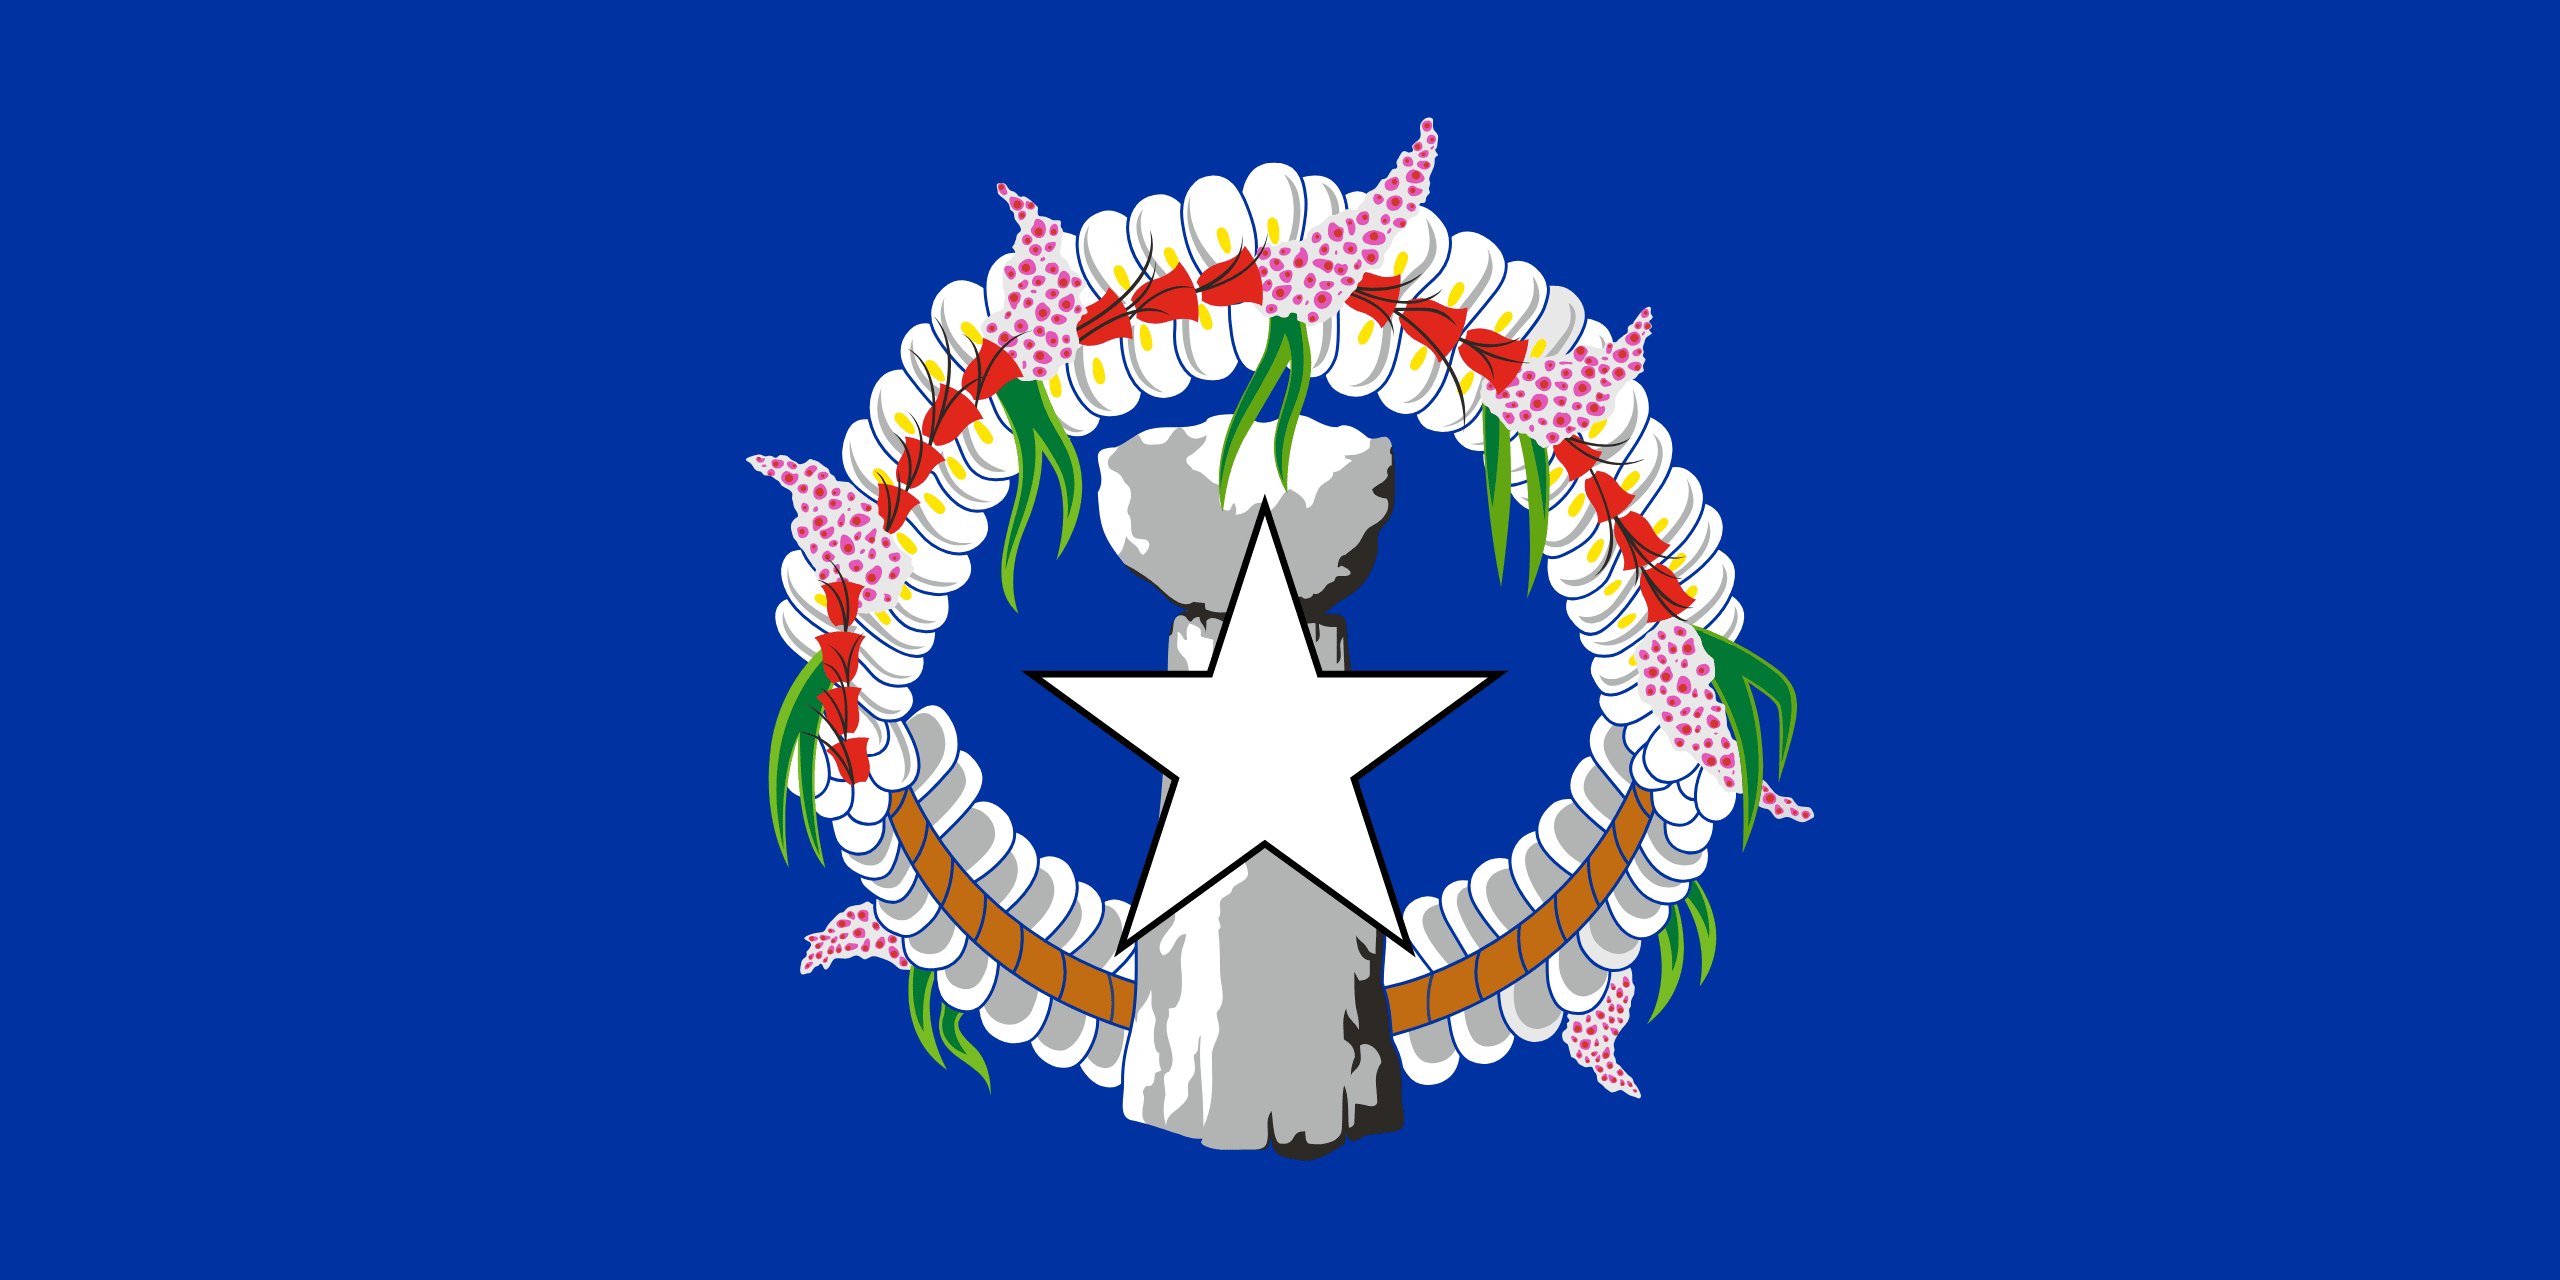 Northern Mariana Islands Flag